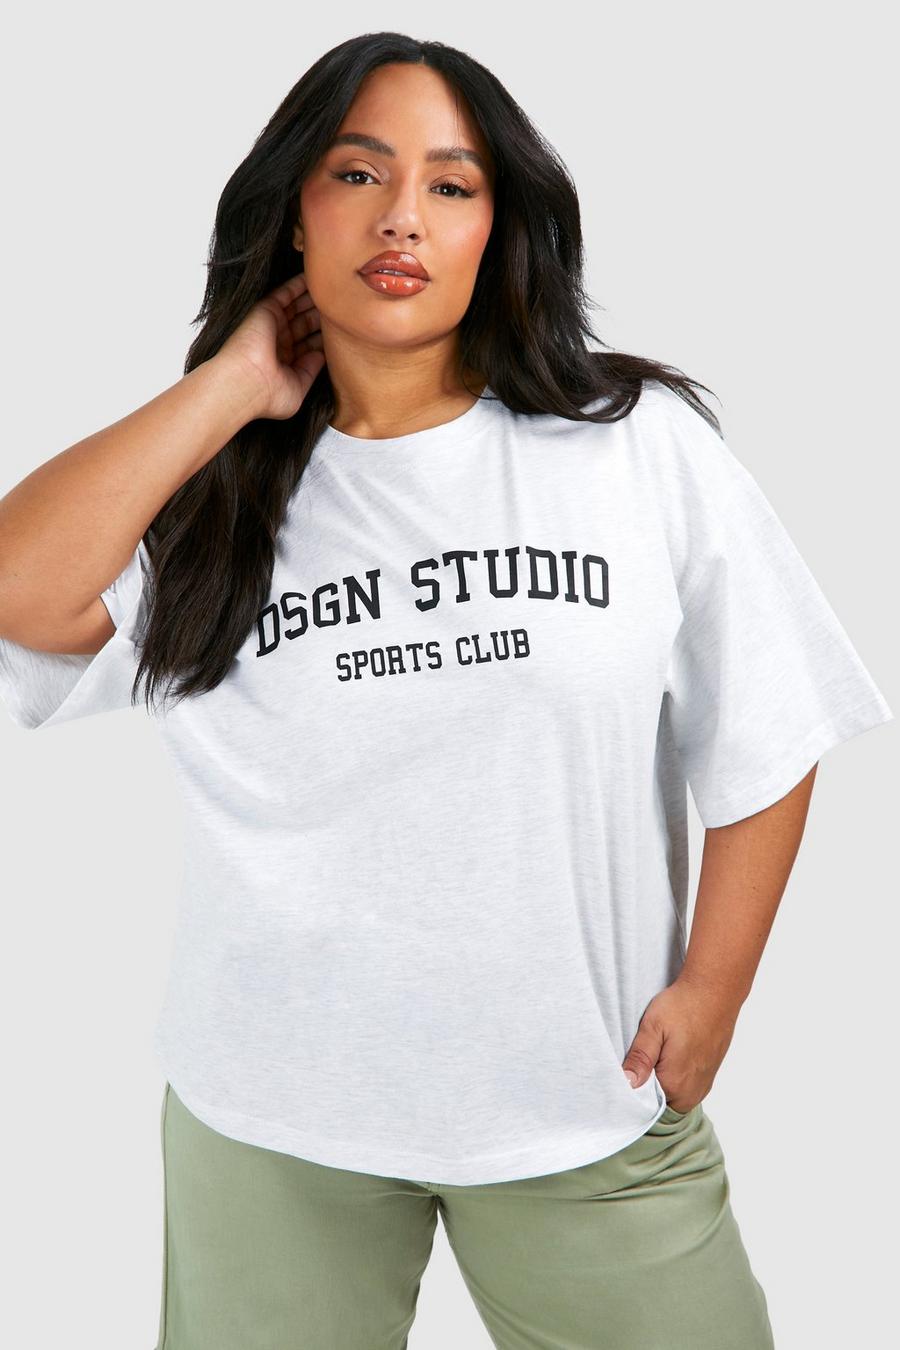 Camiseta Plus oversize con estampado Dsgn Studio Sports Club, Ash grey image number 1